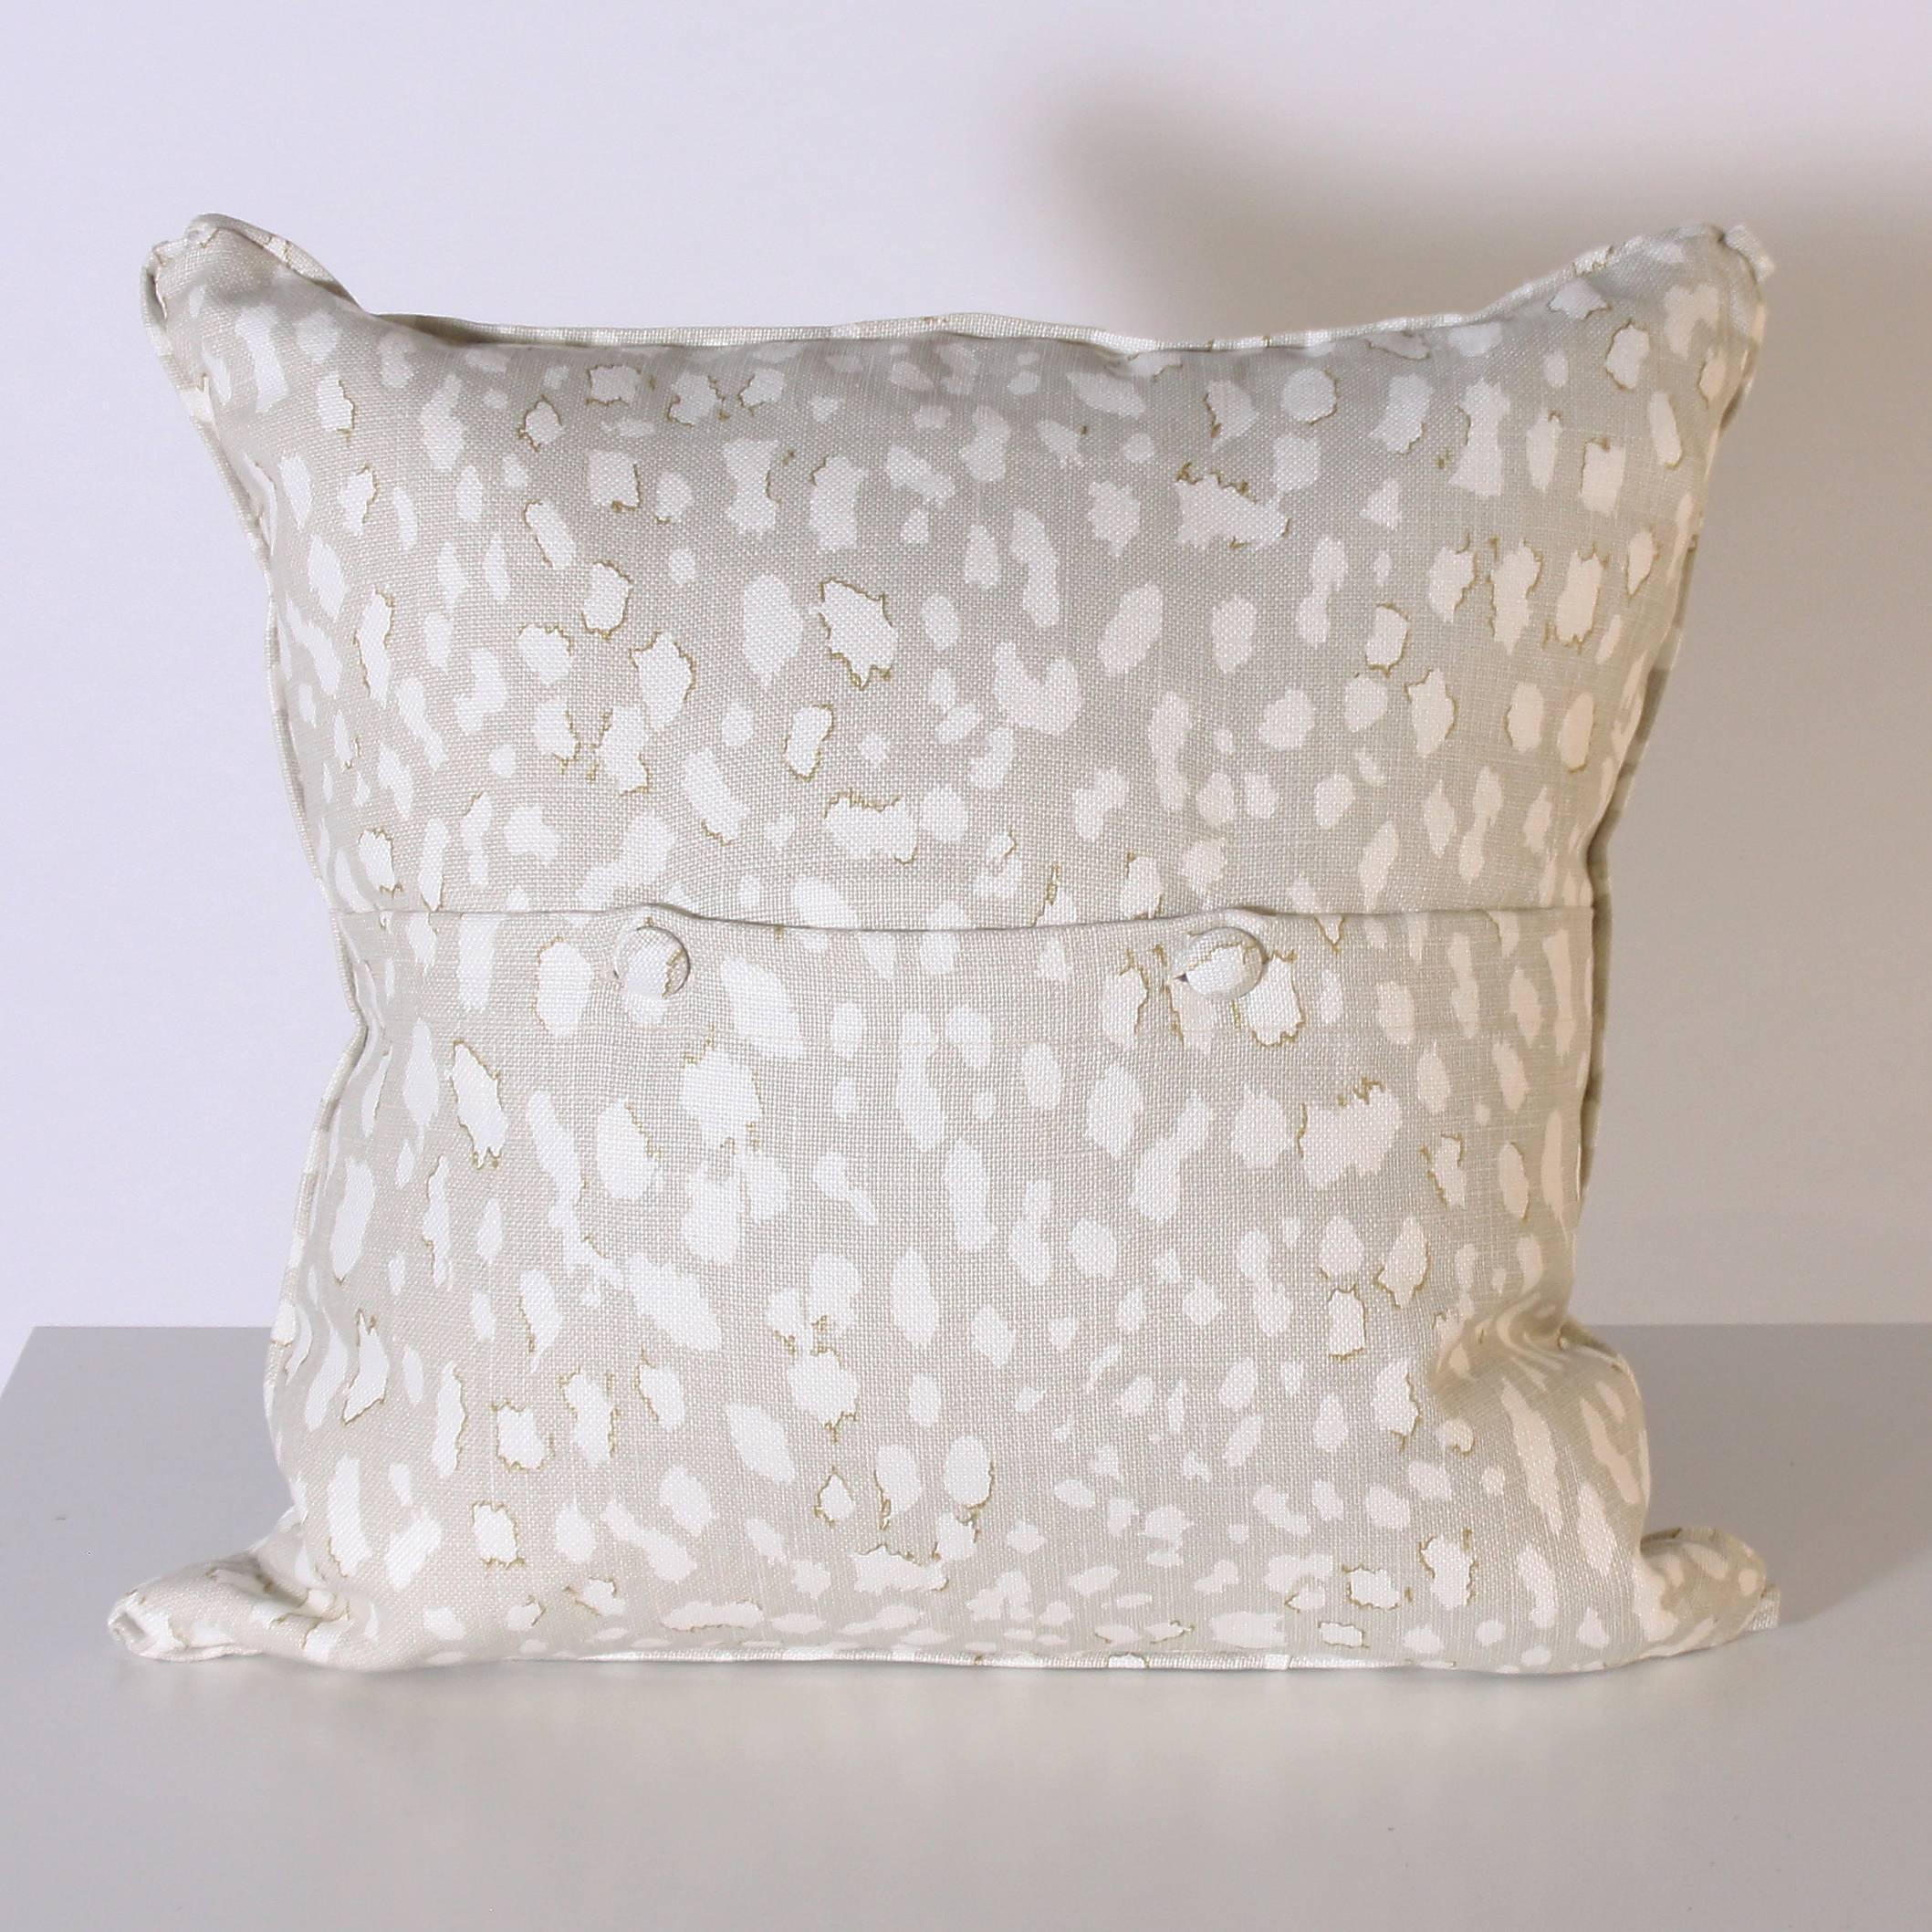 Pair of pillows upholstered in Jan Showers for Kravet Lynx Dot Oyster fabric
